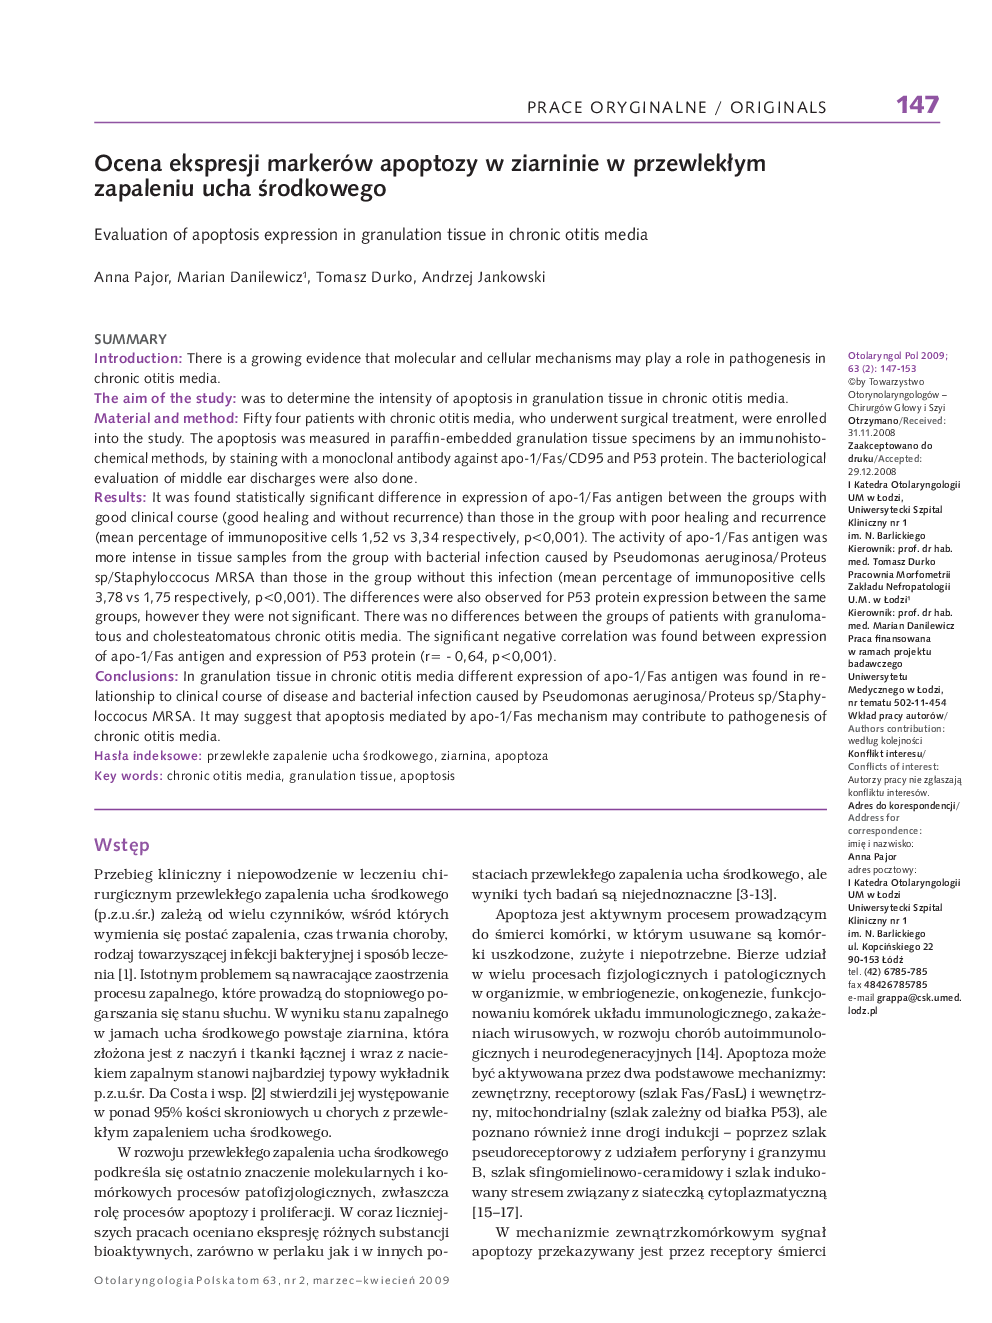 Ocena ekspresji markerów apoptozy w ziarninie w przewlekÅym zapaleniu ucha Årodkowego